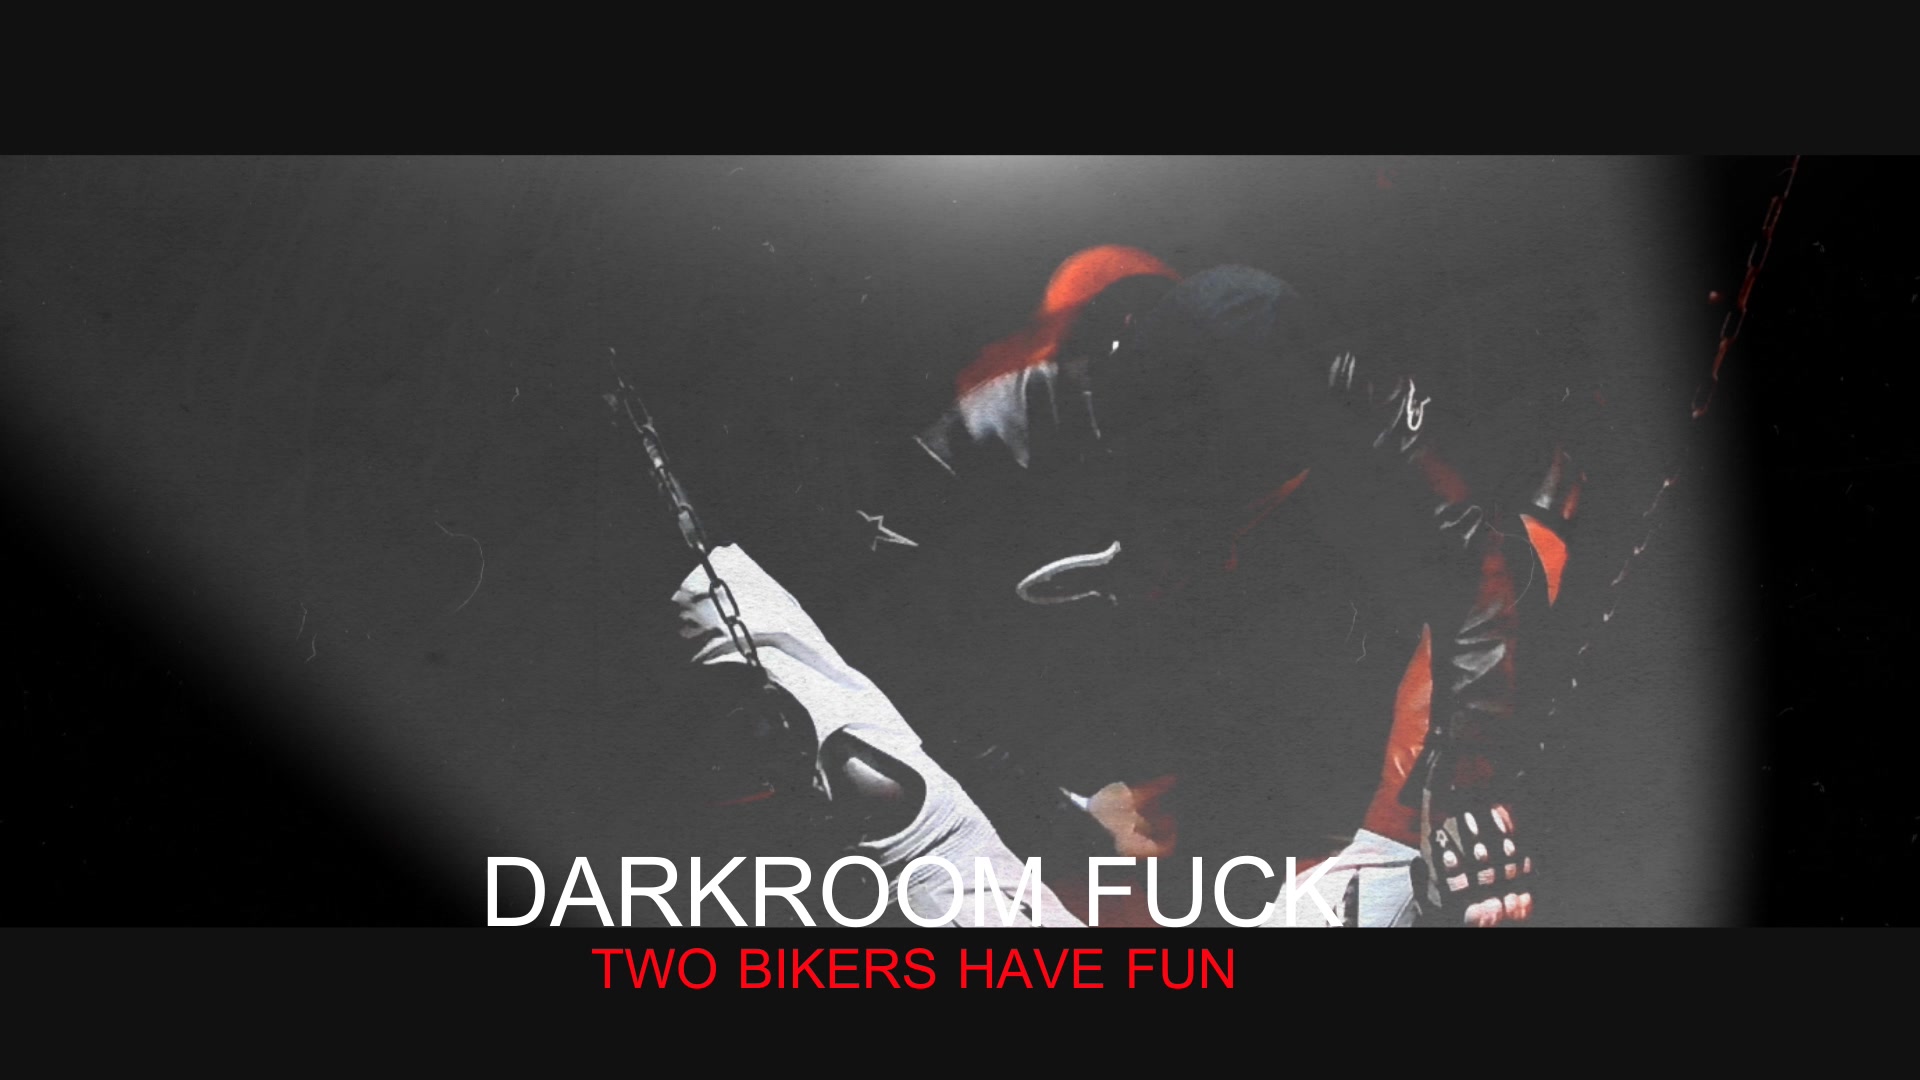 38 PREVIEW - Darkroom fuck